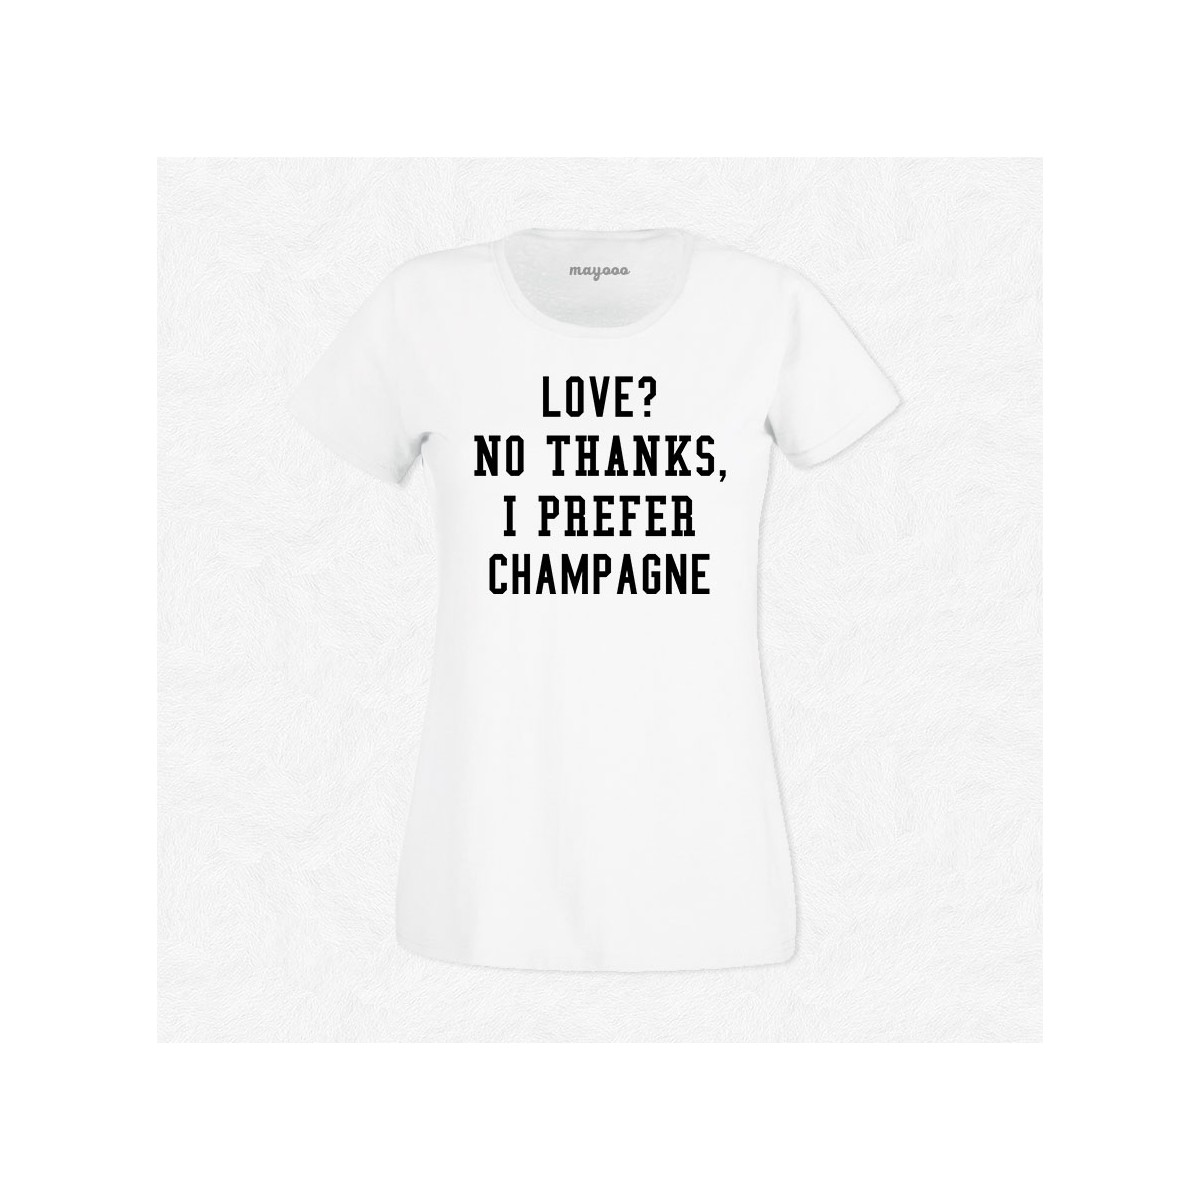 T-shirt I prefer champagne